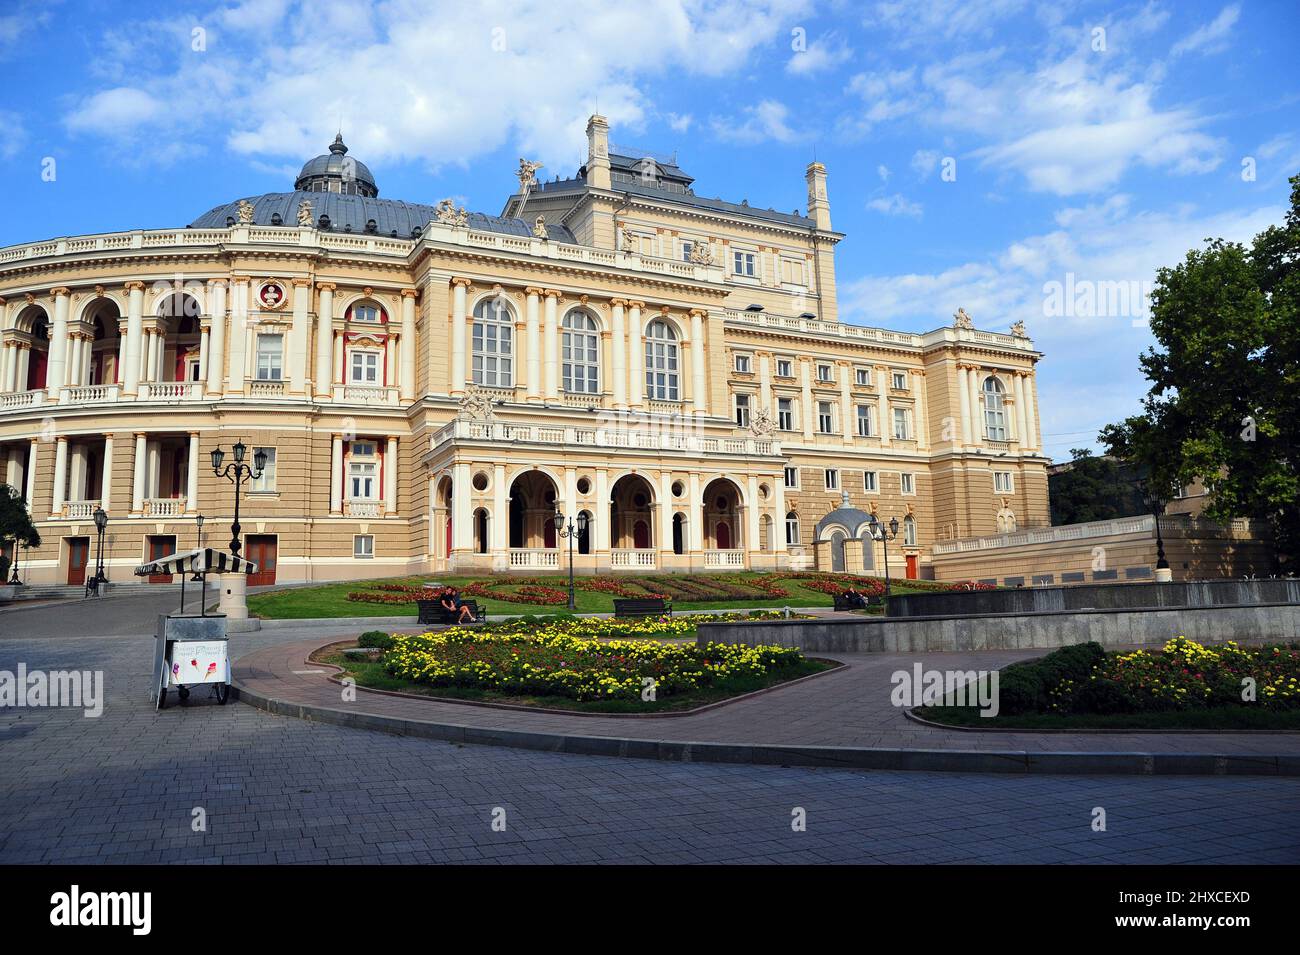 Il Teatro nazionale accademico dell'Opera e del balletto di Odessa, Ucraina, è il più antico teatro della città, nonchè uno degli edifici più famosi Stockfoto